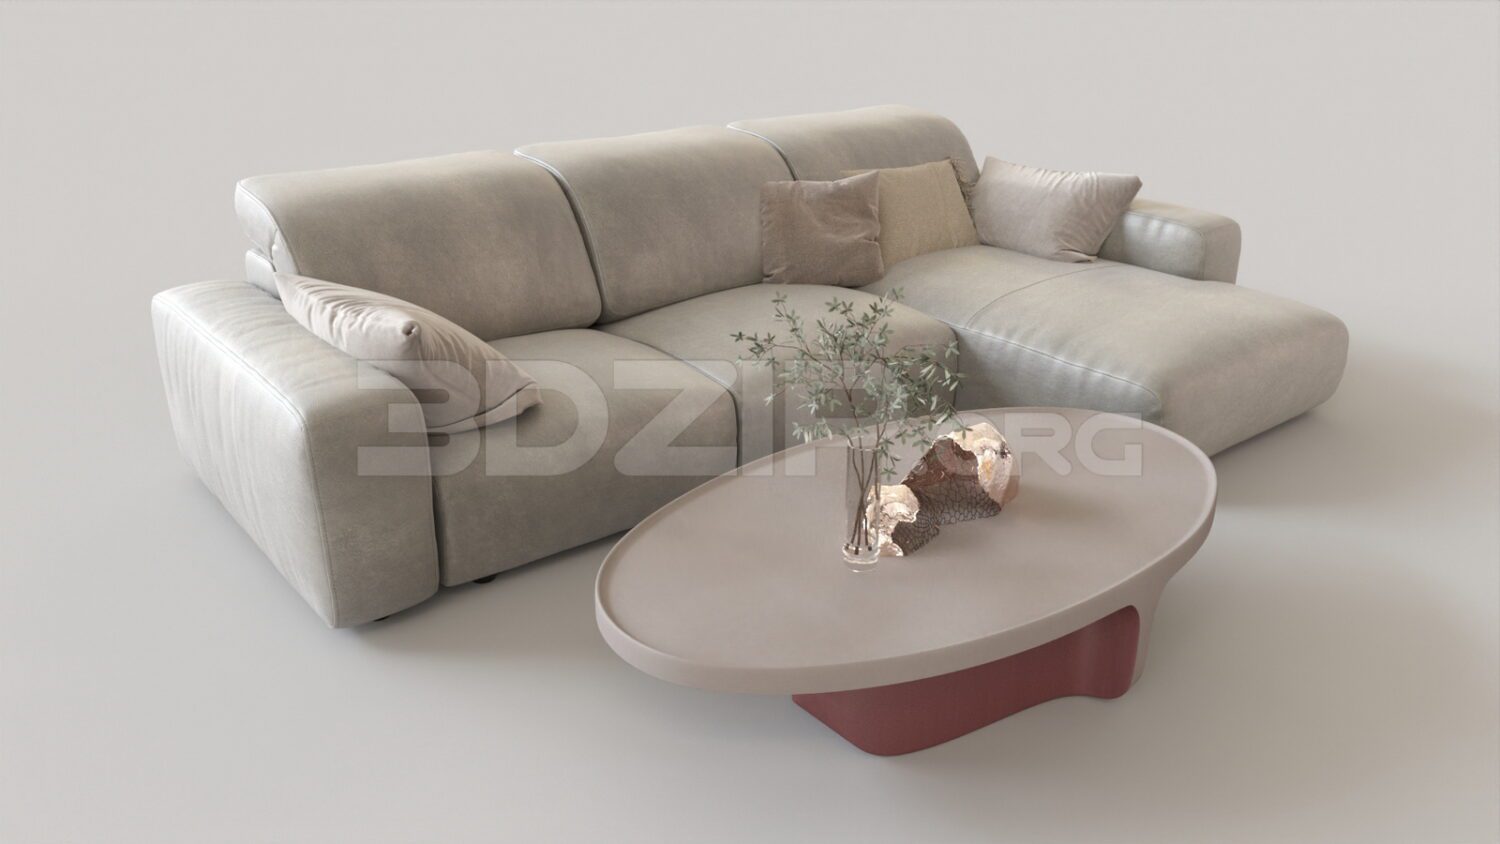 4739. Free 3D Sofa Model Download